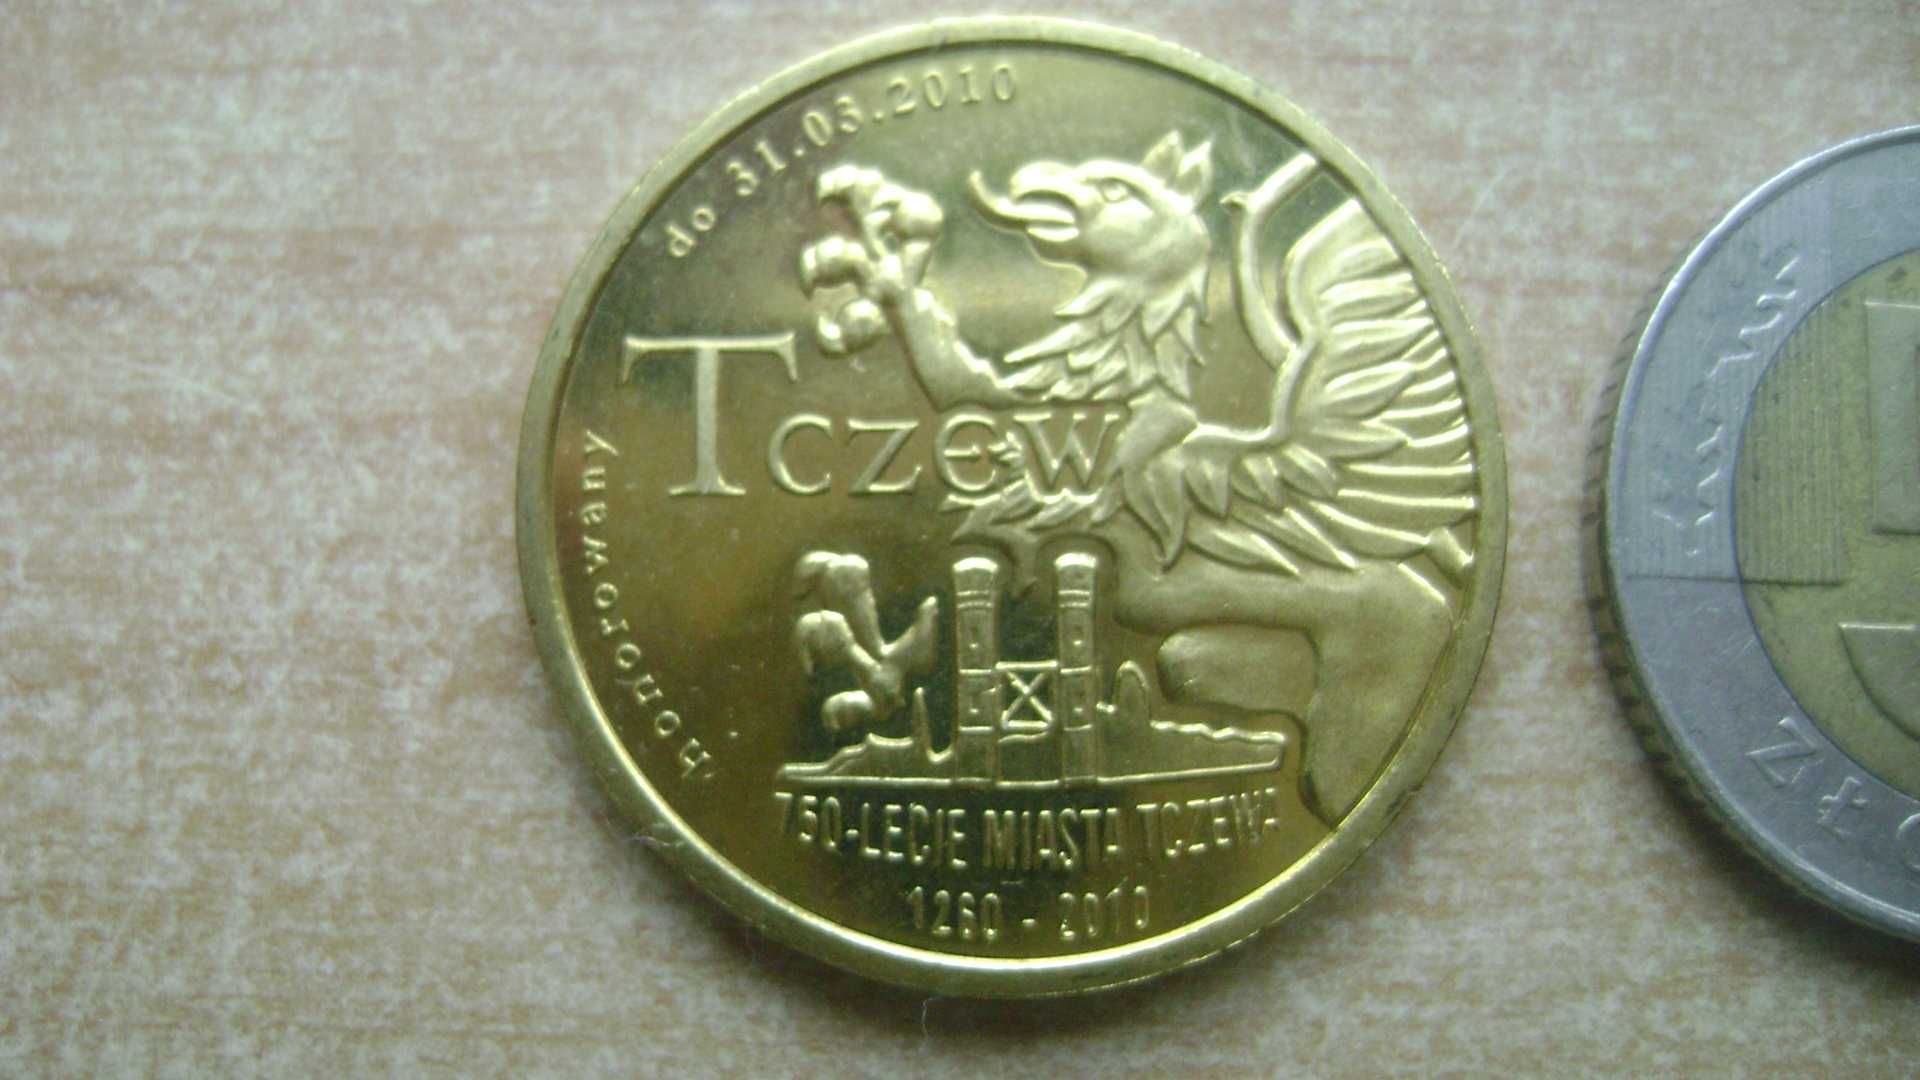 Starocie z PRL - Stare monety pamiątkowe = 4 Trsowy z Tczewa